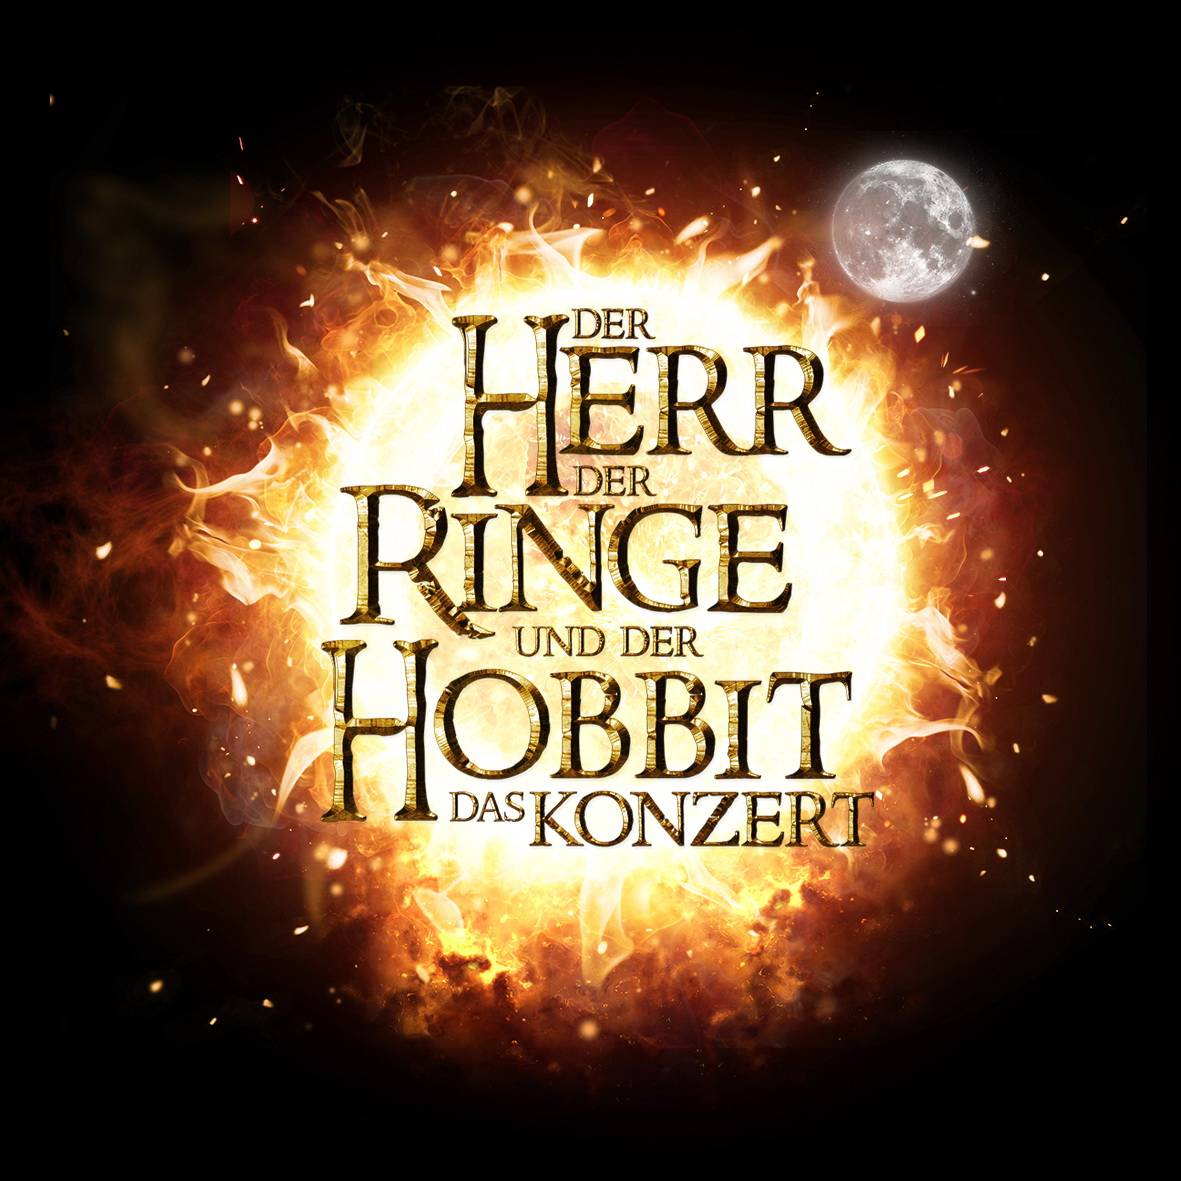 Herr der Ringe und Hobbit: Ein epochales Ereignis